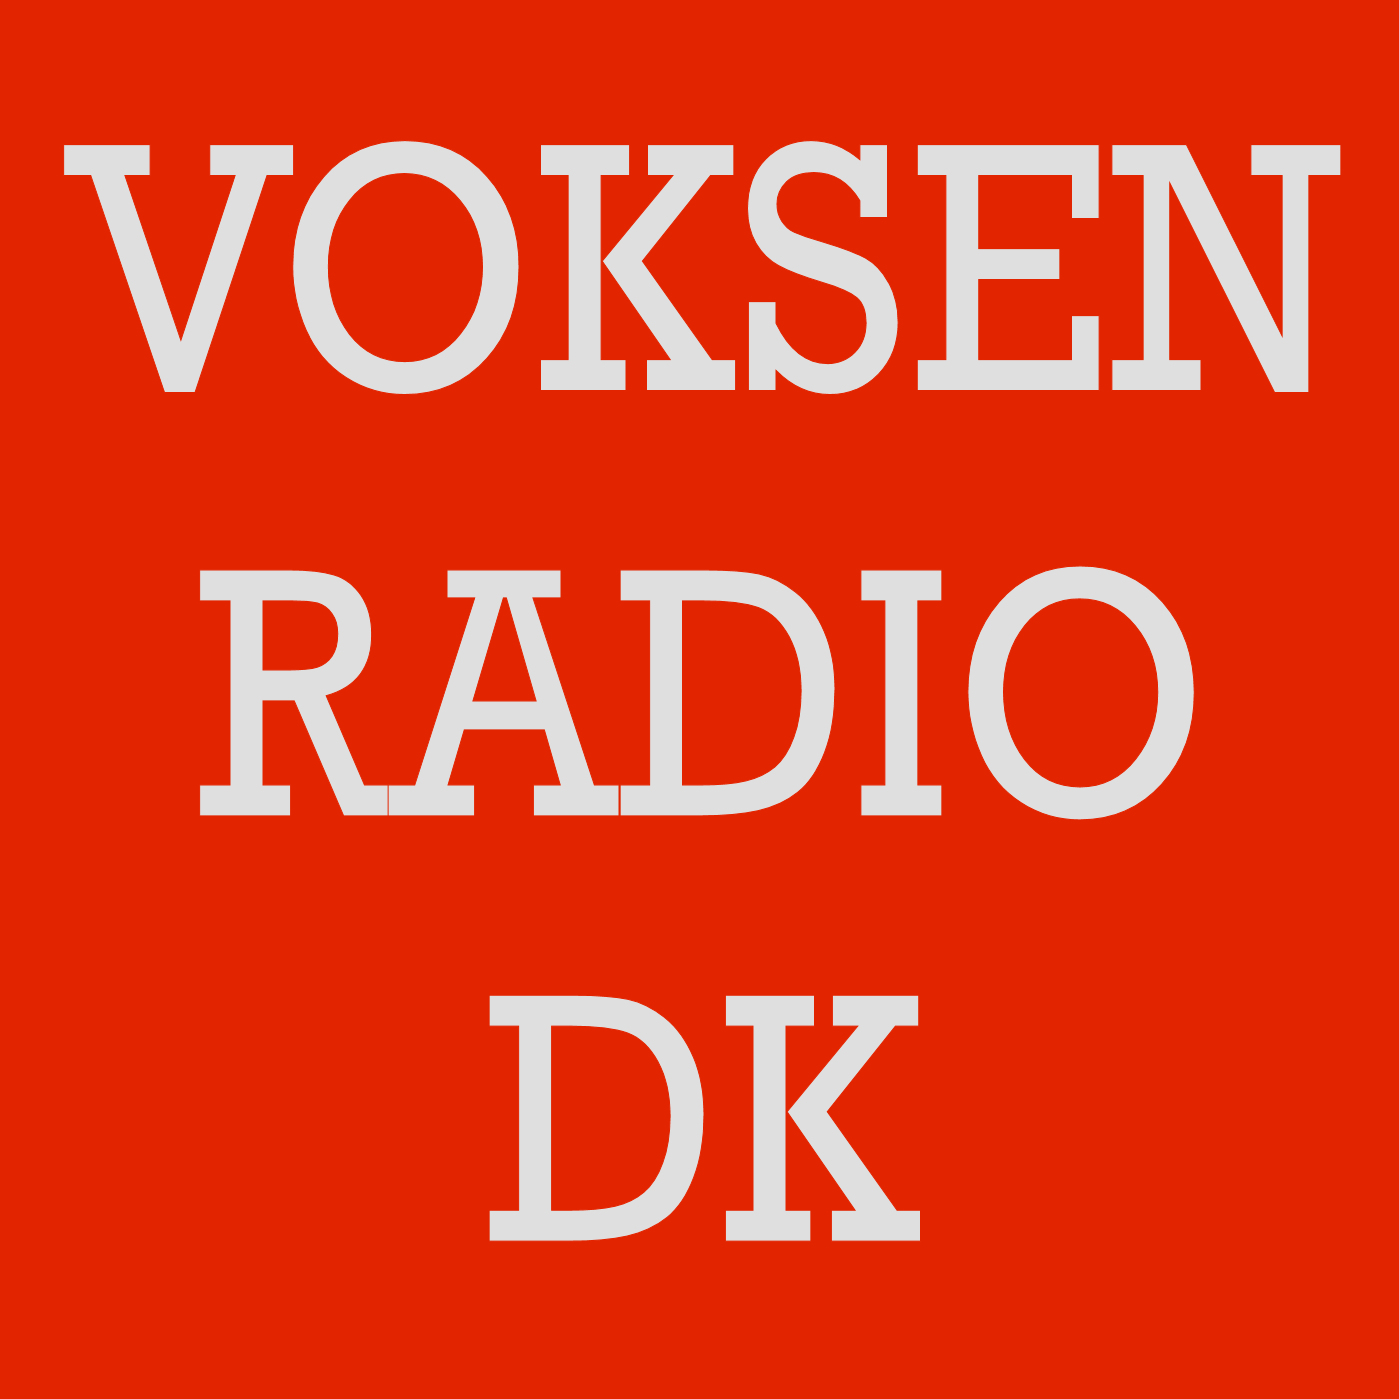 Radionomy – Voksenradio DK | free online radio station